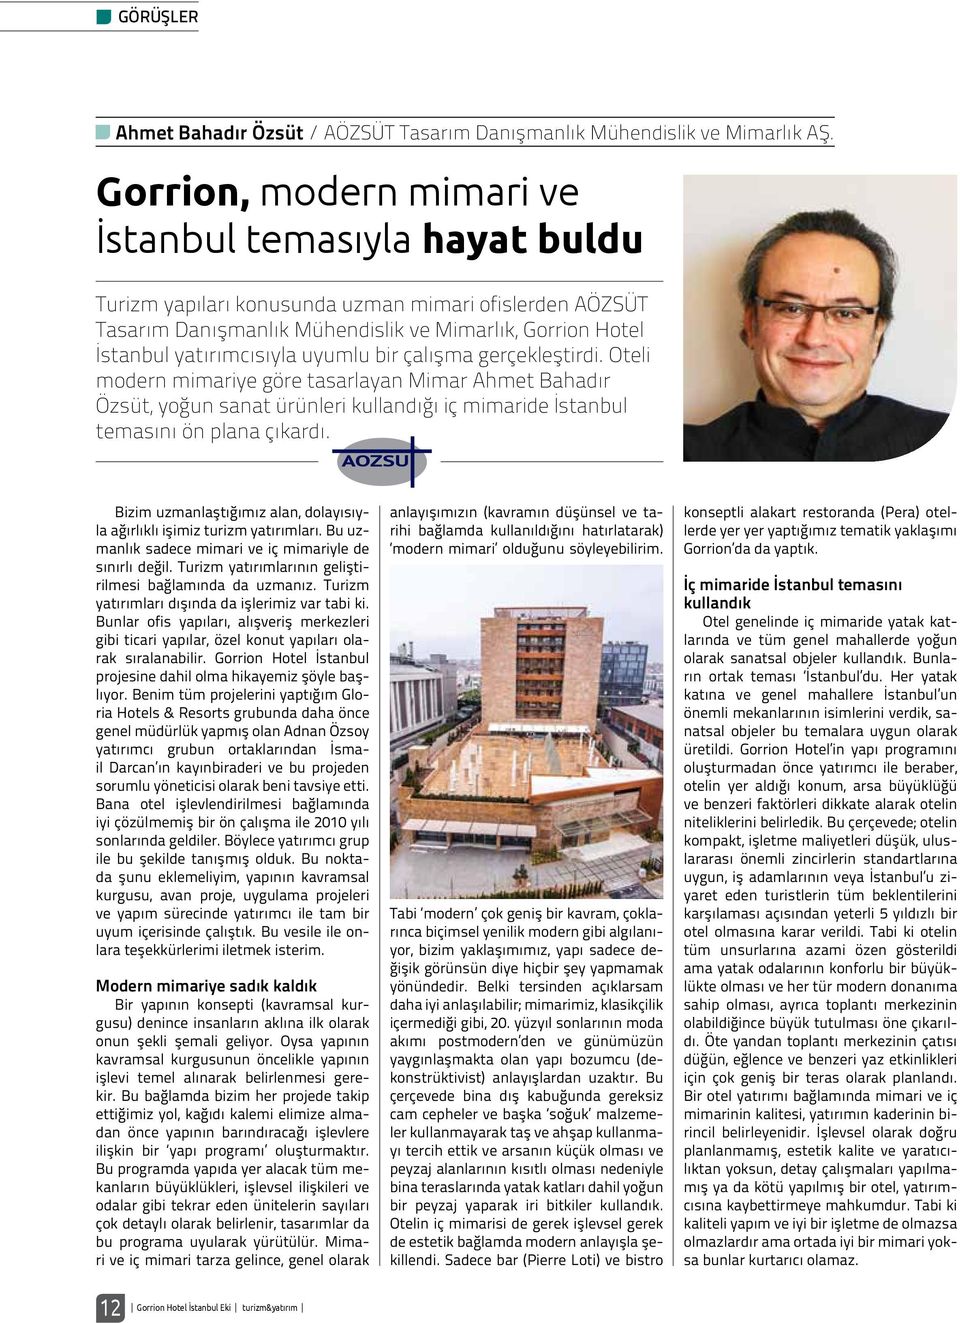 uyumlu bir çalışma gerçekleştirdi. Oteli modern mimariye göre tasarlayan Mimar Ahmet Bahadır Özsüt, yoğun sanat ürünleri kullandığı iç mimaride İstanbul temasını ön plana çıkardı.